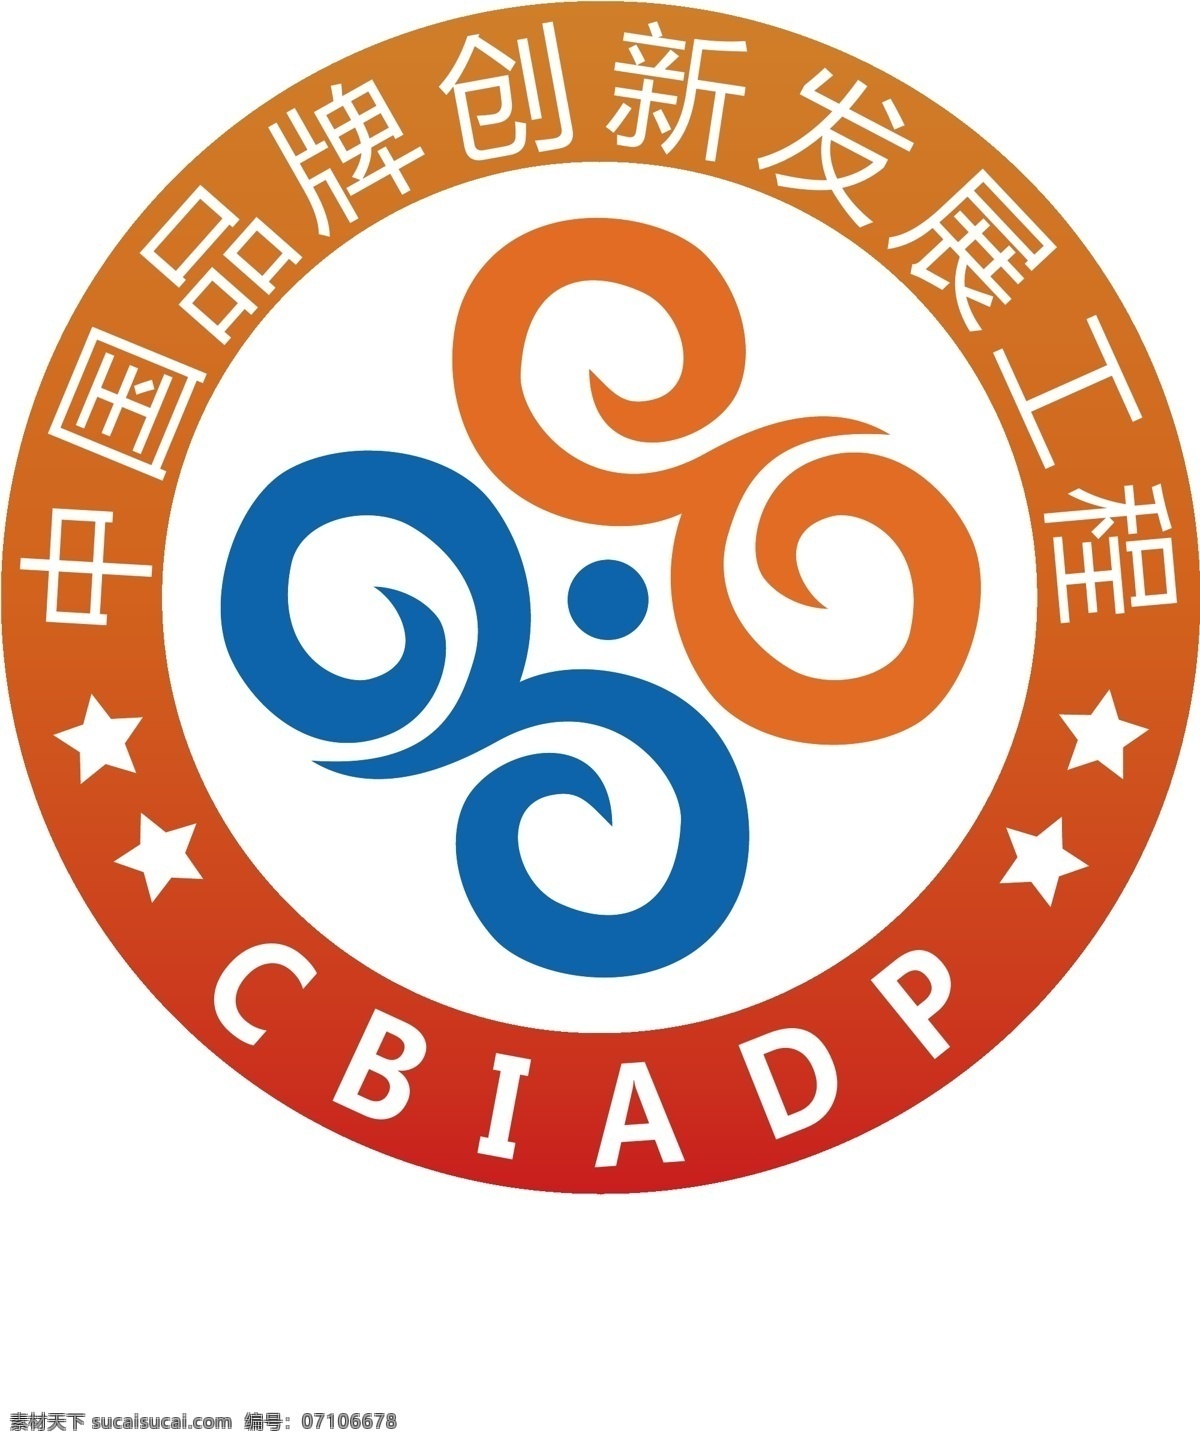 中国 品牌 创新 发展 工程 logo